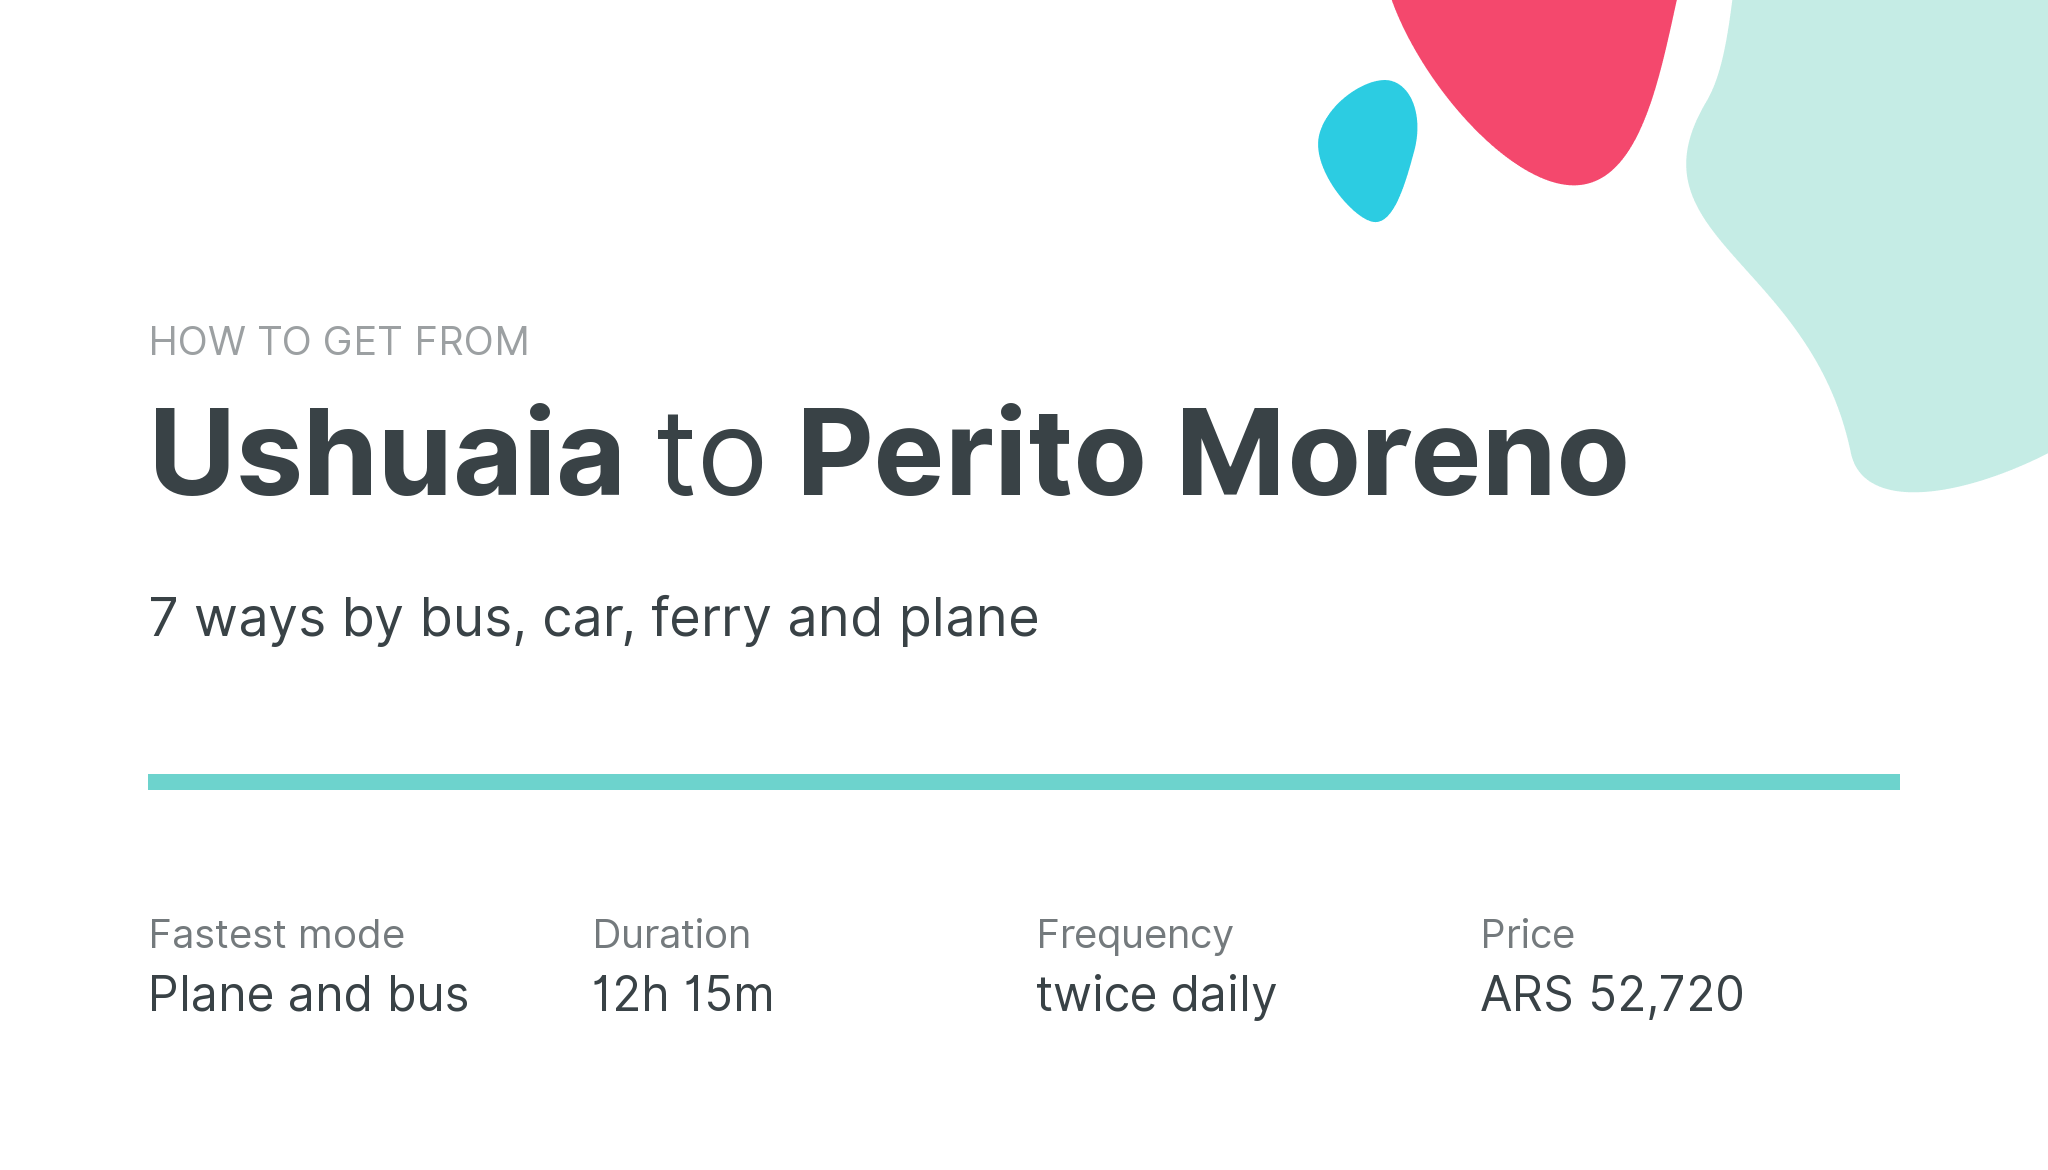 How do I get from Ushuaia to Perito Moreno